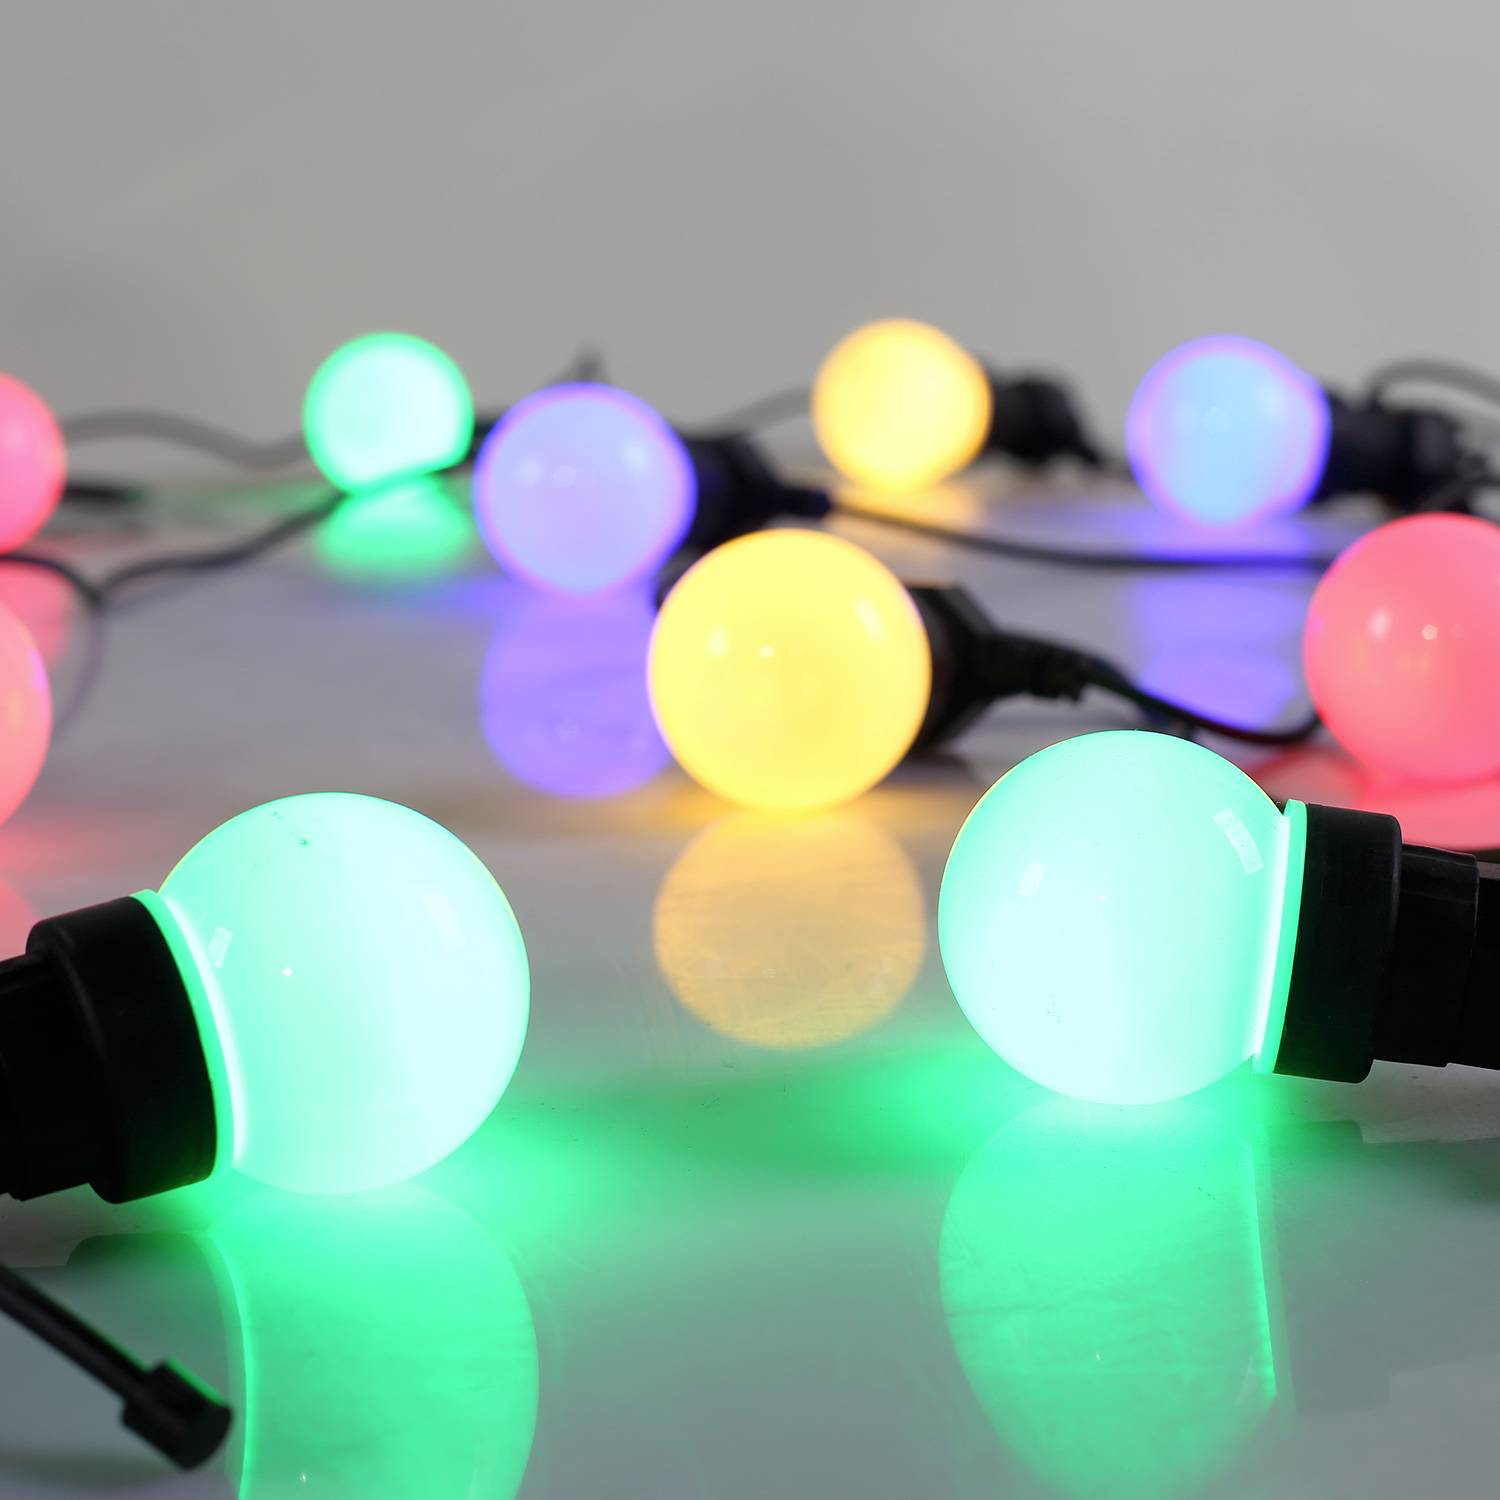 HERACLES - Lichterkette für draußen mit 10 Glühbirnen, 50 mehrfarbigen LEDs, batteriebetrieben, Timerfunktion, 8 Einstellungen, 4,5 m lang Photo5